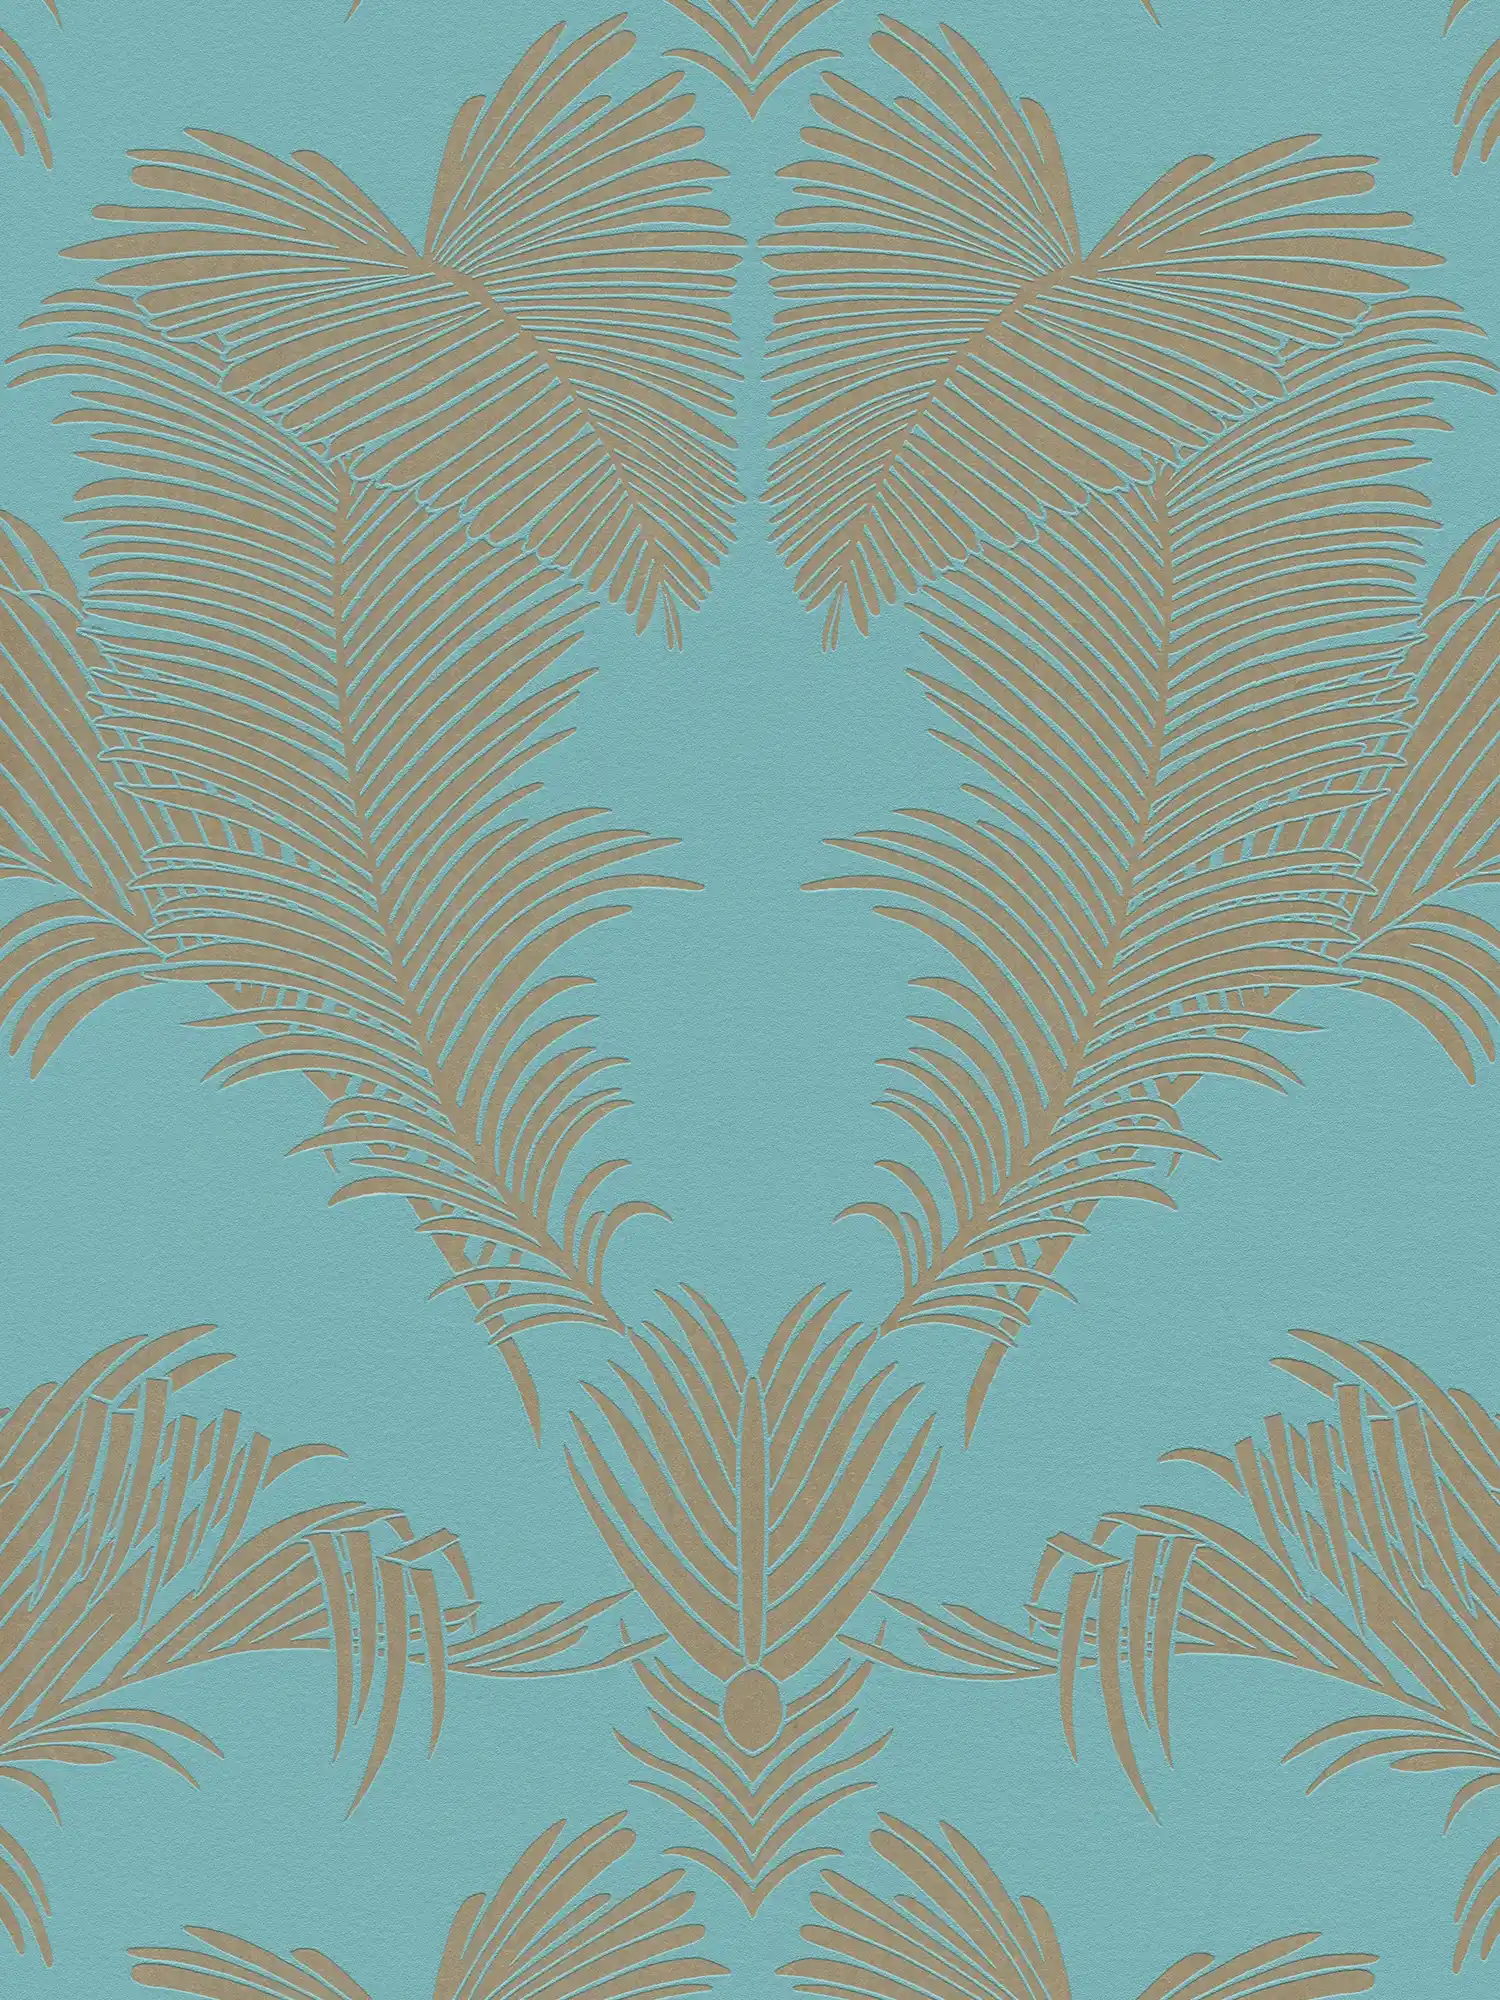 Papier peint intissé turquoise avec motif de feuilles en or métallique
